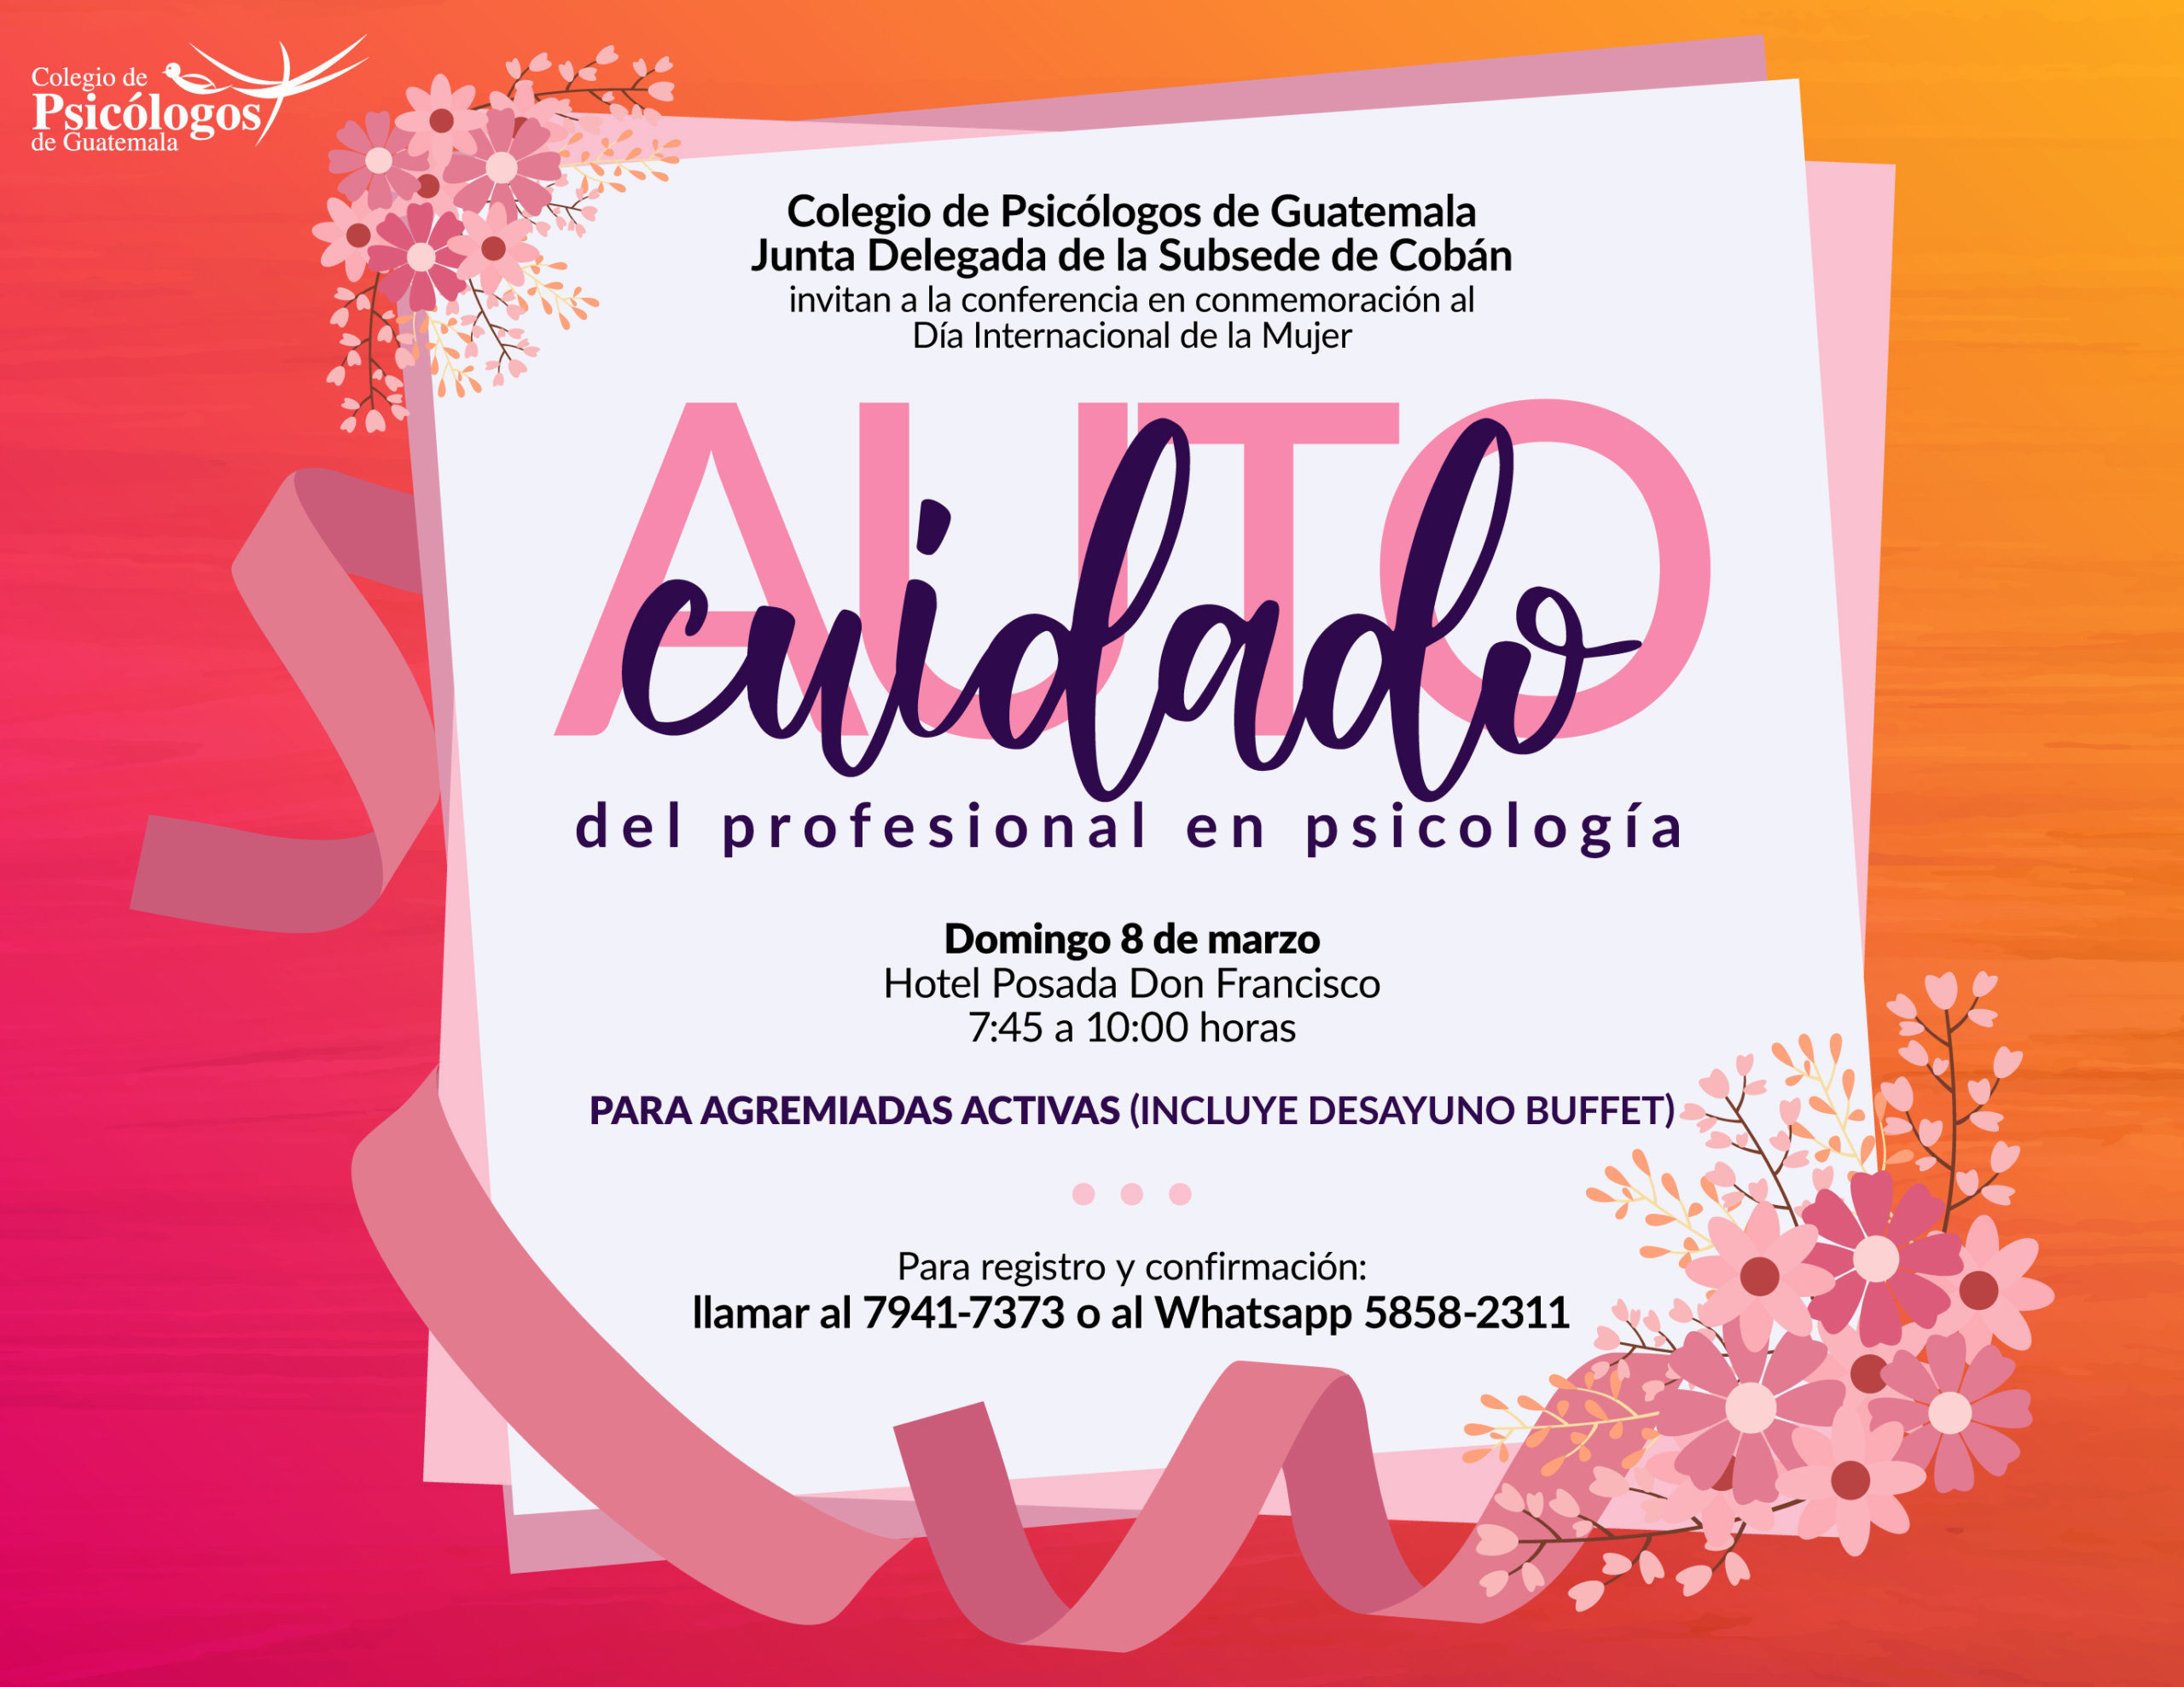 Auto Cuidado del Profesional de Psicología | Colegio de Psicólogos de  Guatemala